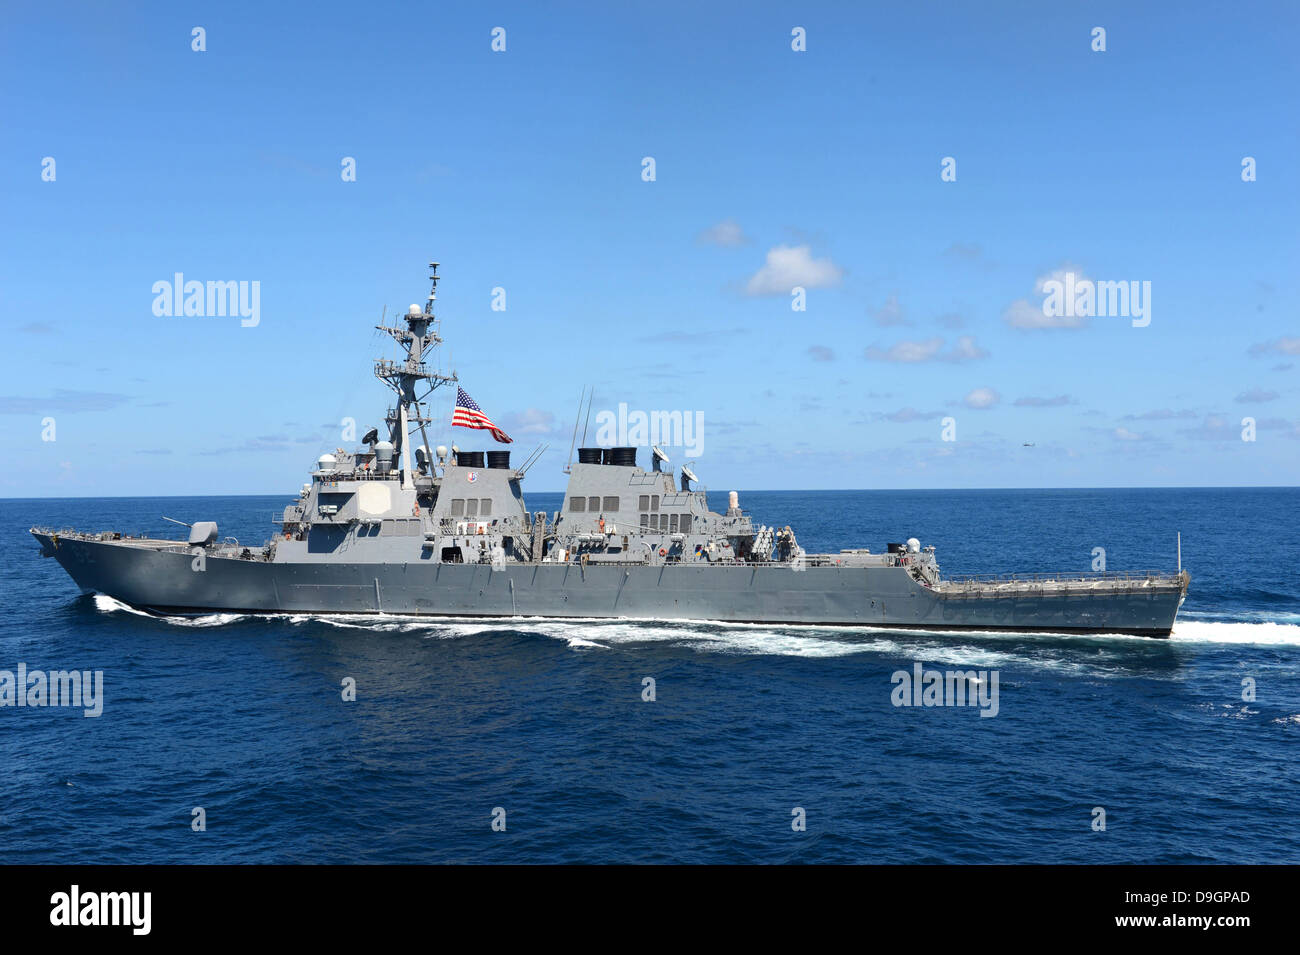 L'océan Pacifique, le 27 août 2012 - lance-missiles le destroyer USS Fitzgerald (DDG 62) les transits de l'océan Pacifique. Banque D'Images